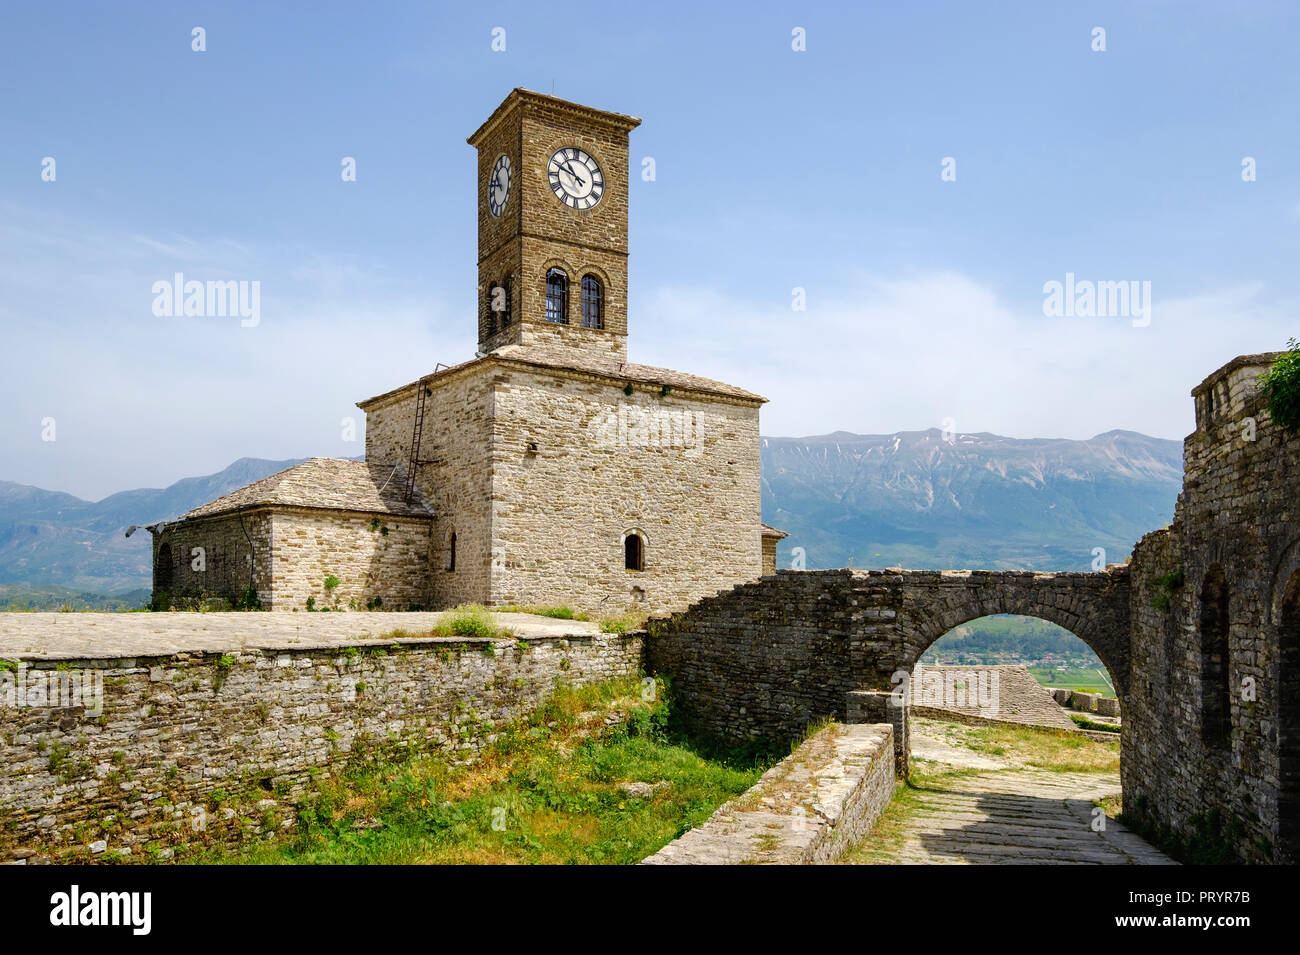 Albania, Argirocastro, orologio da torre a rocca Foto Stock